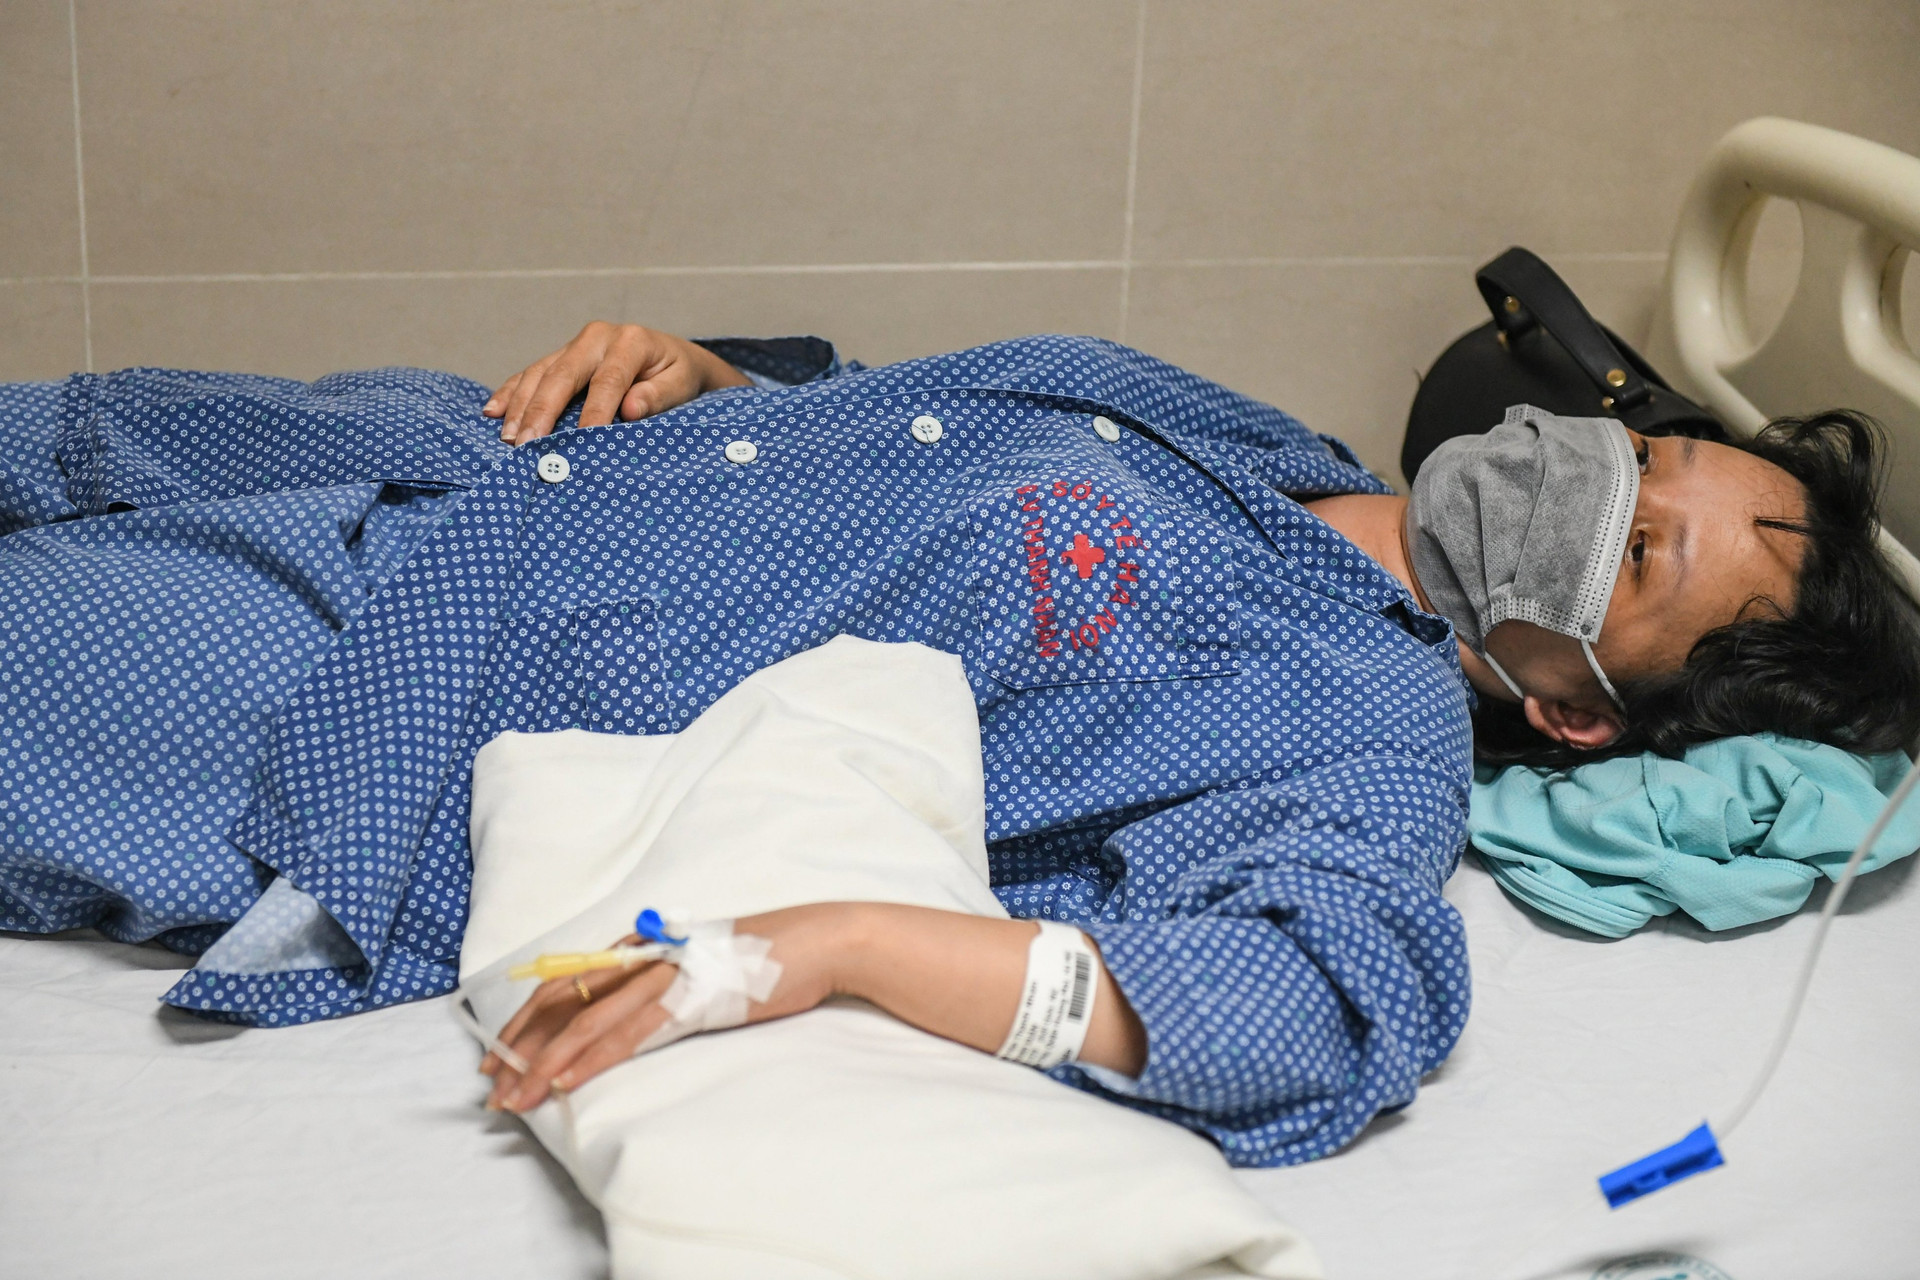 Sốt xuất huyết leo thang tại Hà Nội, có bệnh nhân viêm màng não, cô đặc máu - 1